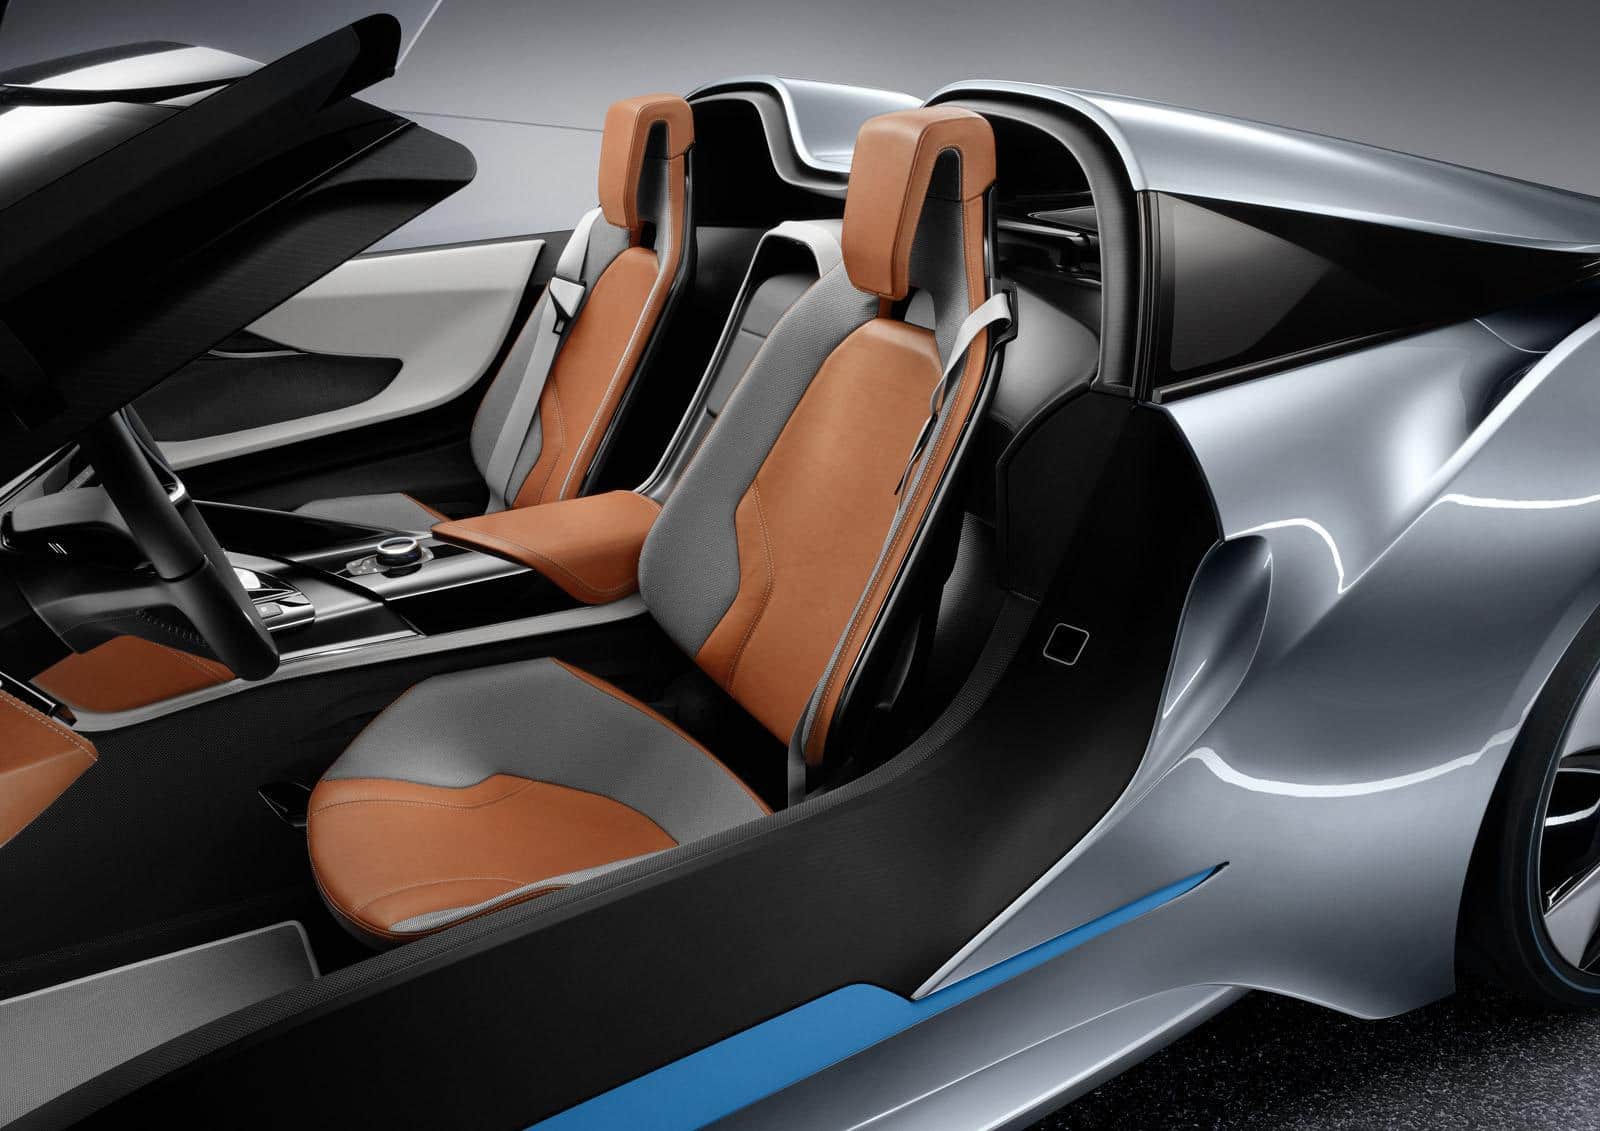 BMW i8 Concept Spyder 23